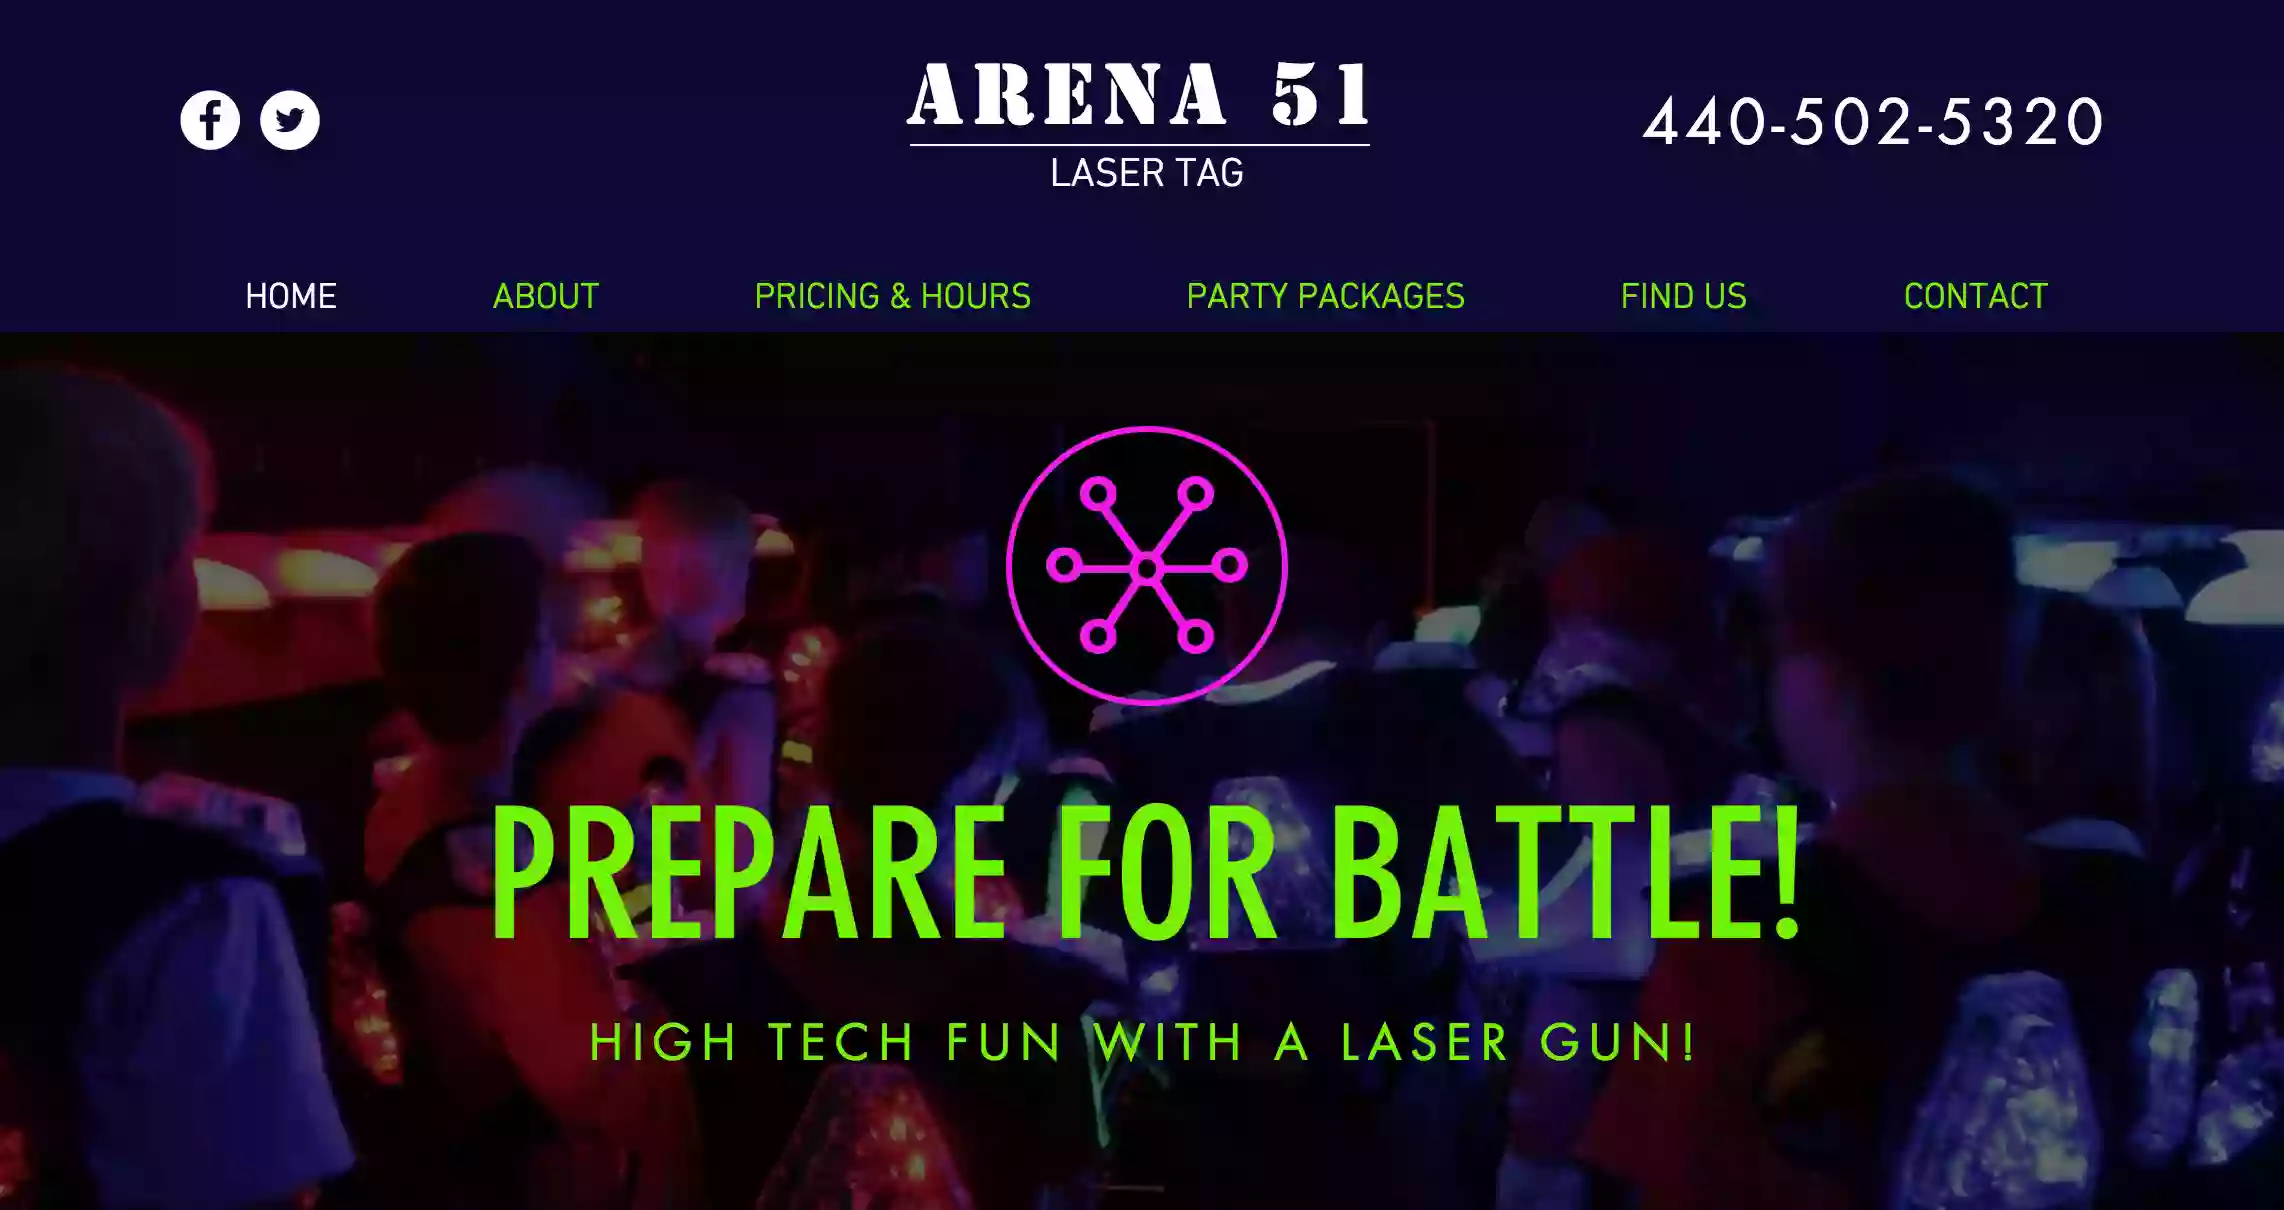 Arena 51 Laser Tag